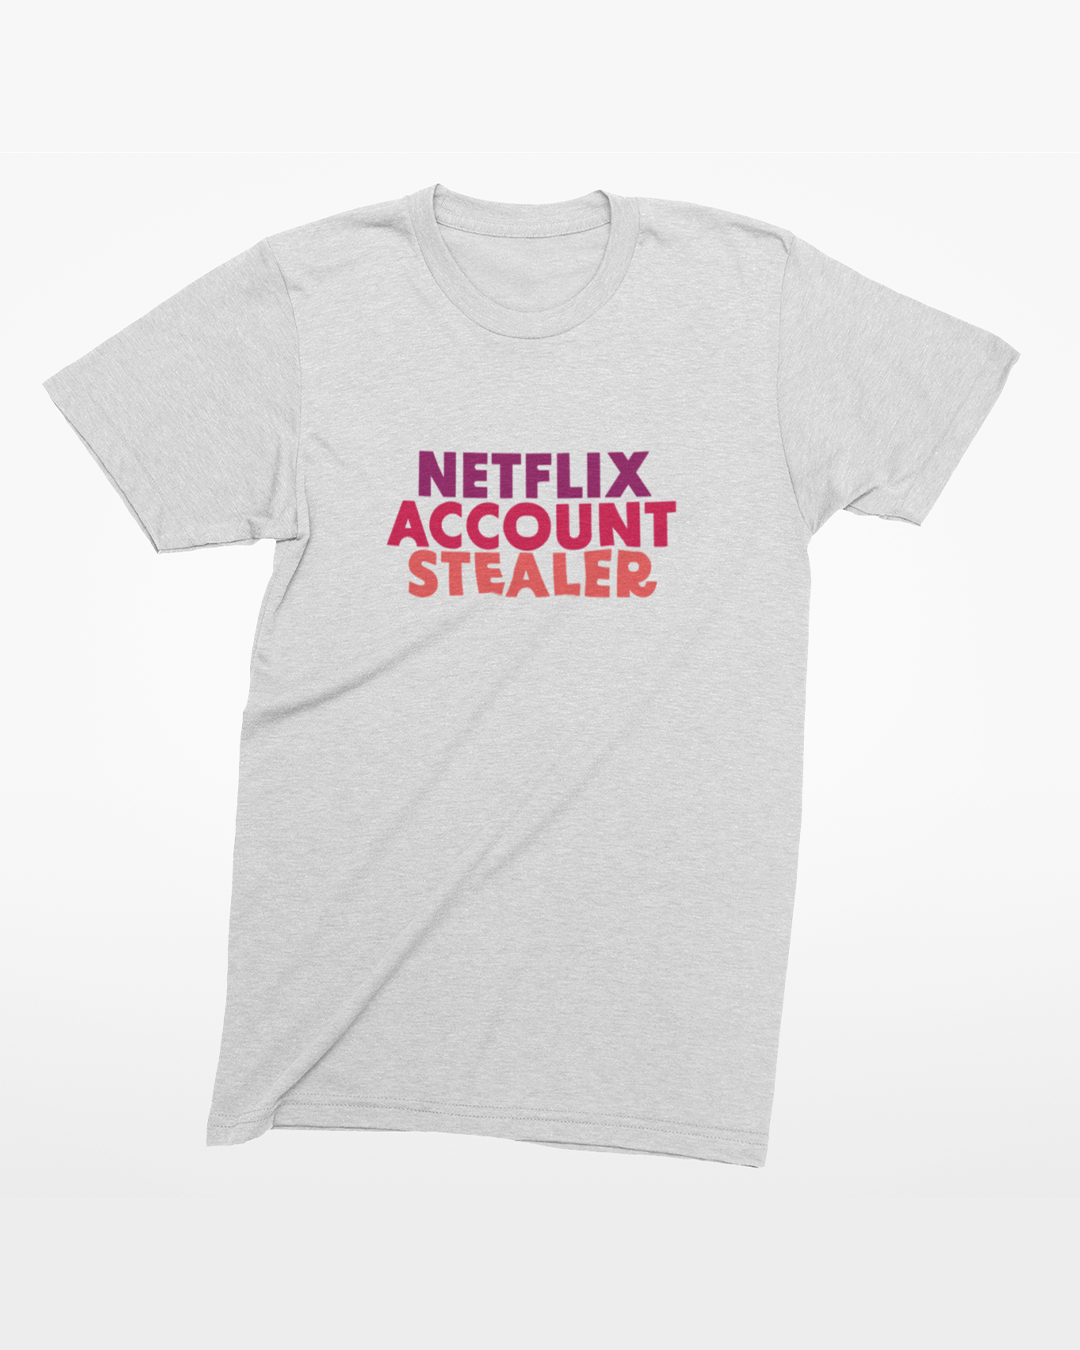 Netflix Inspired T-Shirt - Netflix Account Stealer T-Shirt - Netflix Inspired T-Shirt - Netflix Account Password Sharing